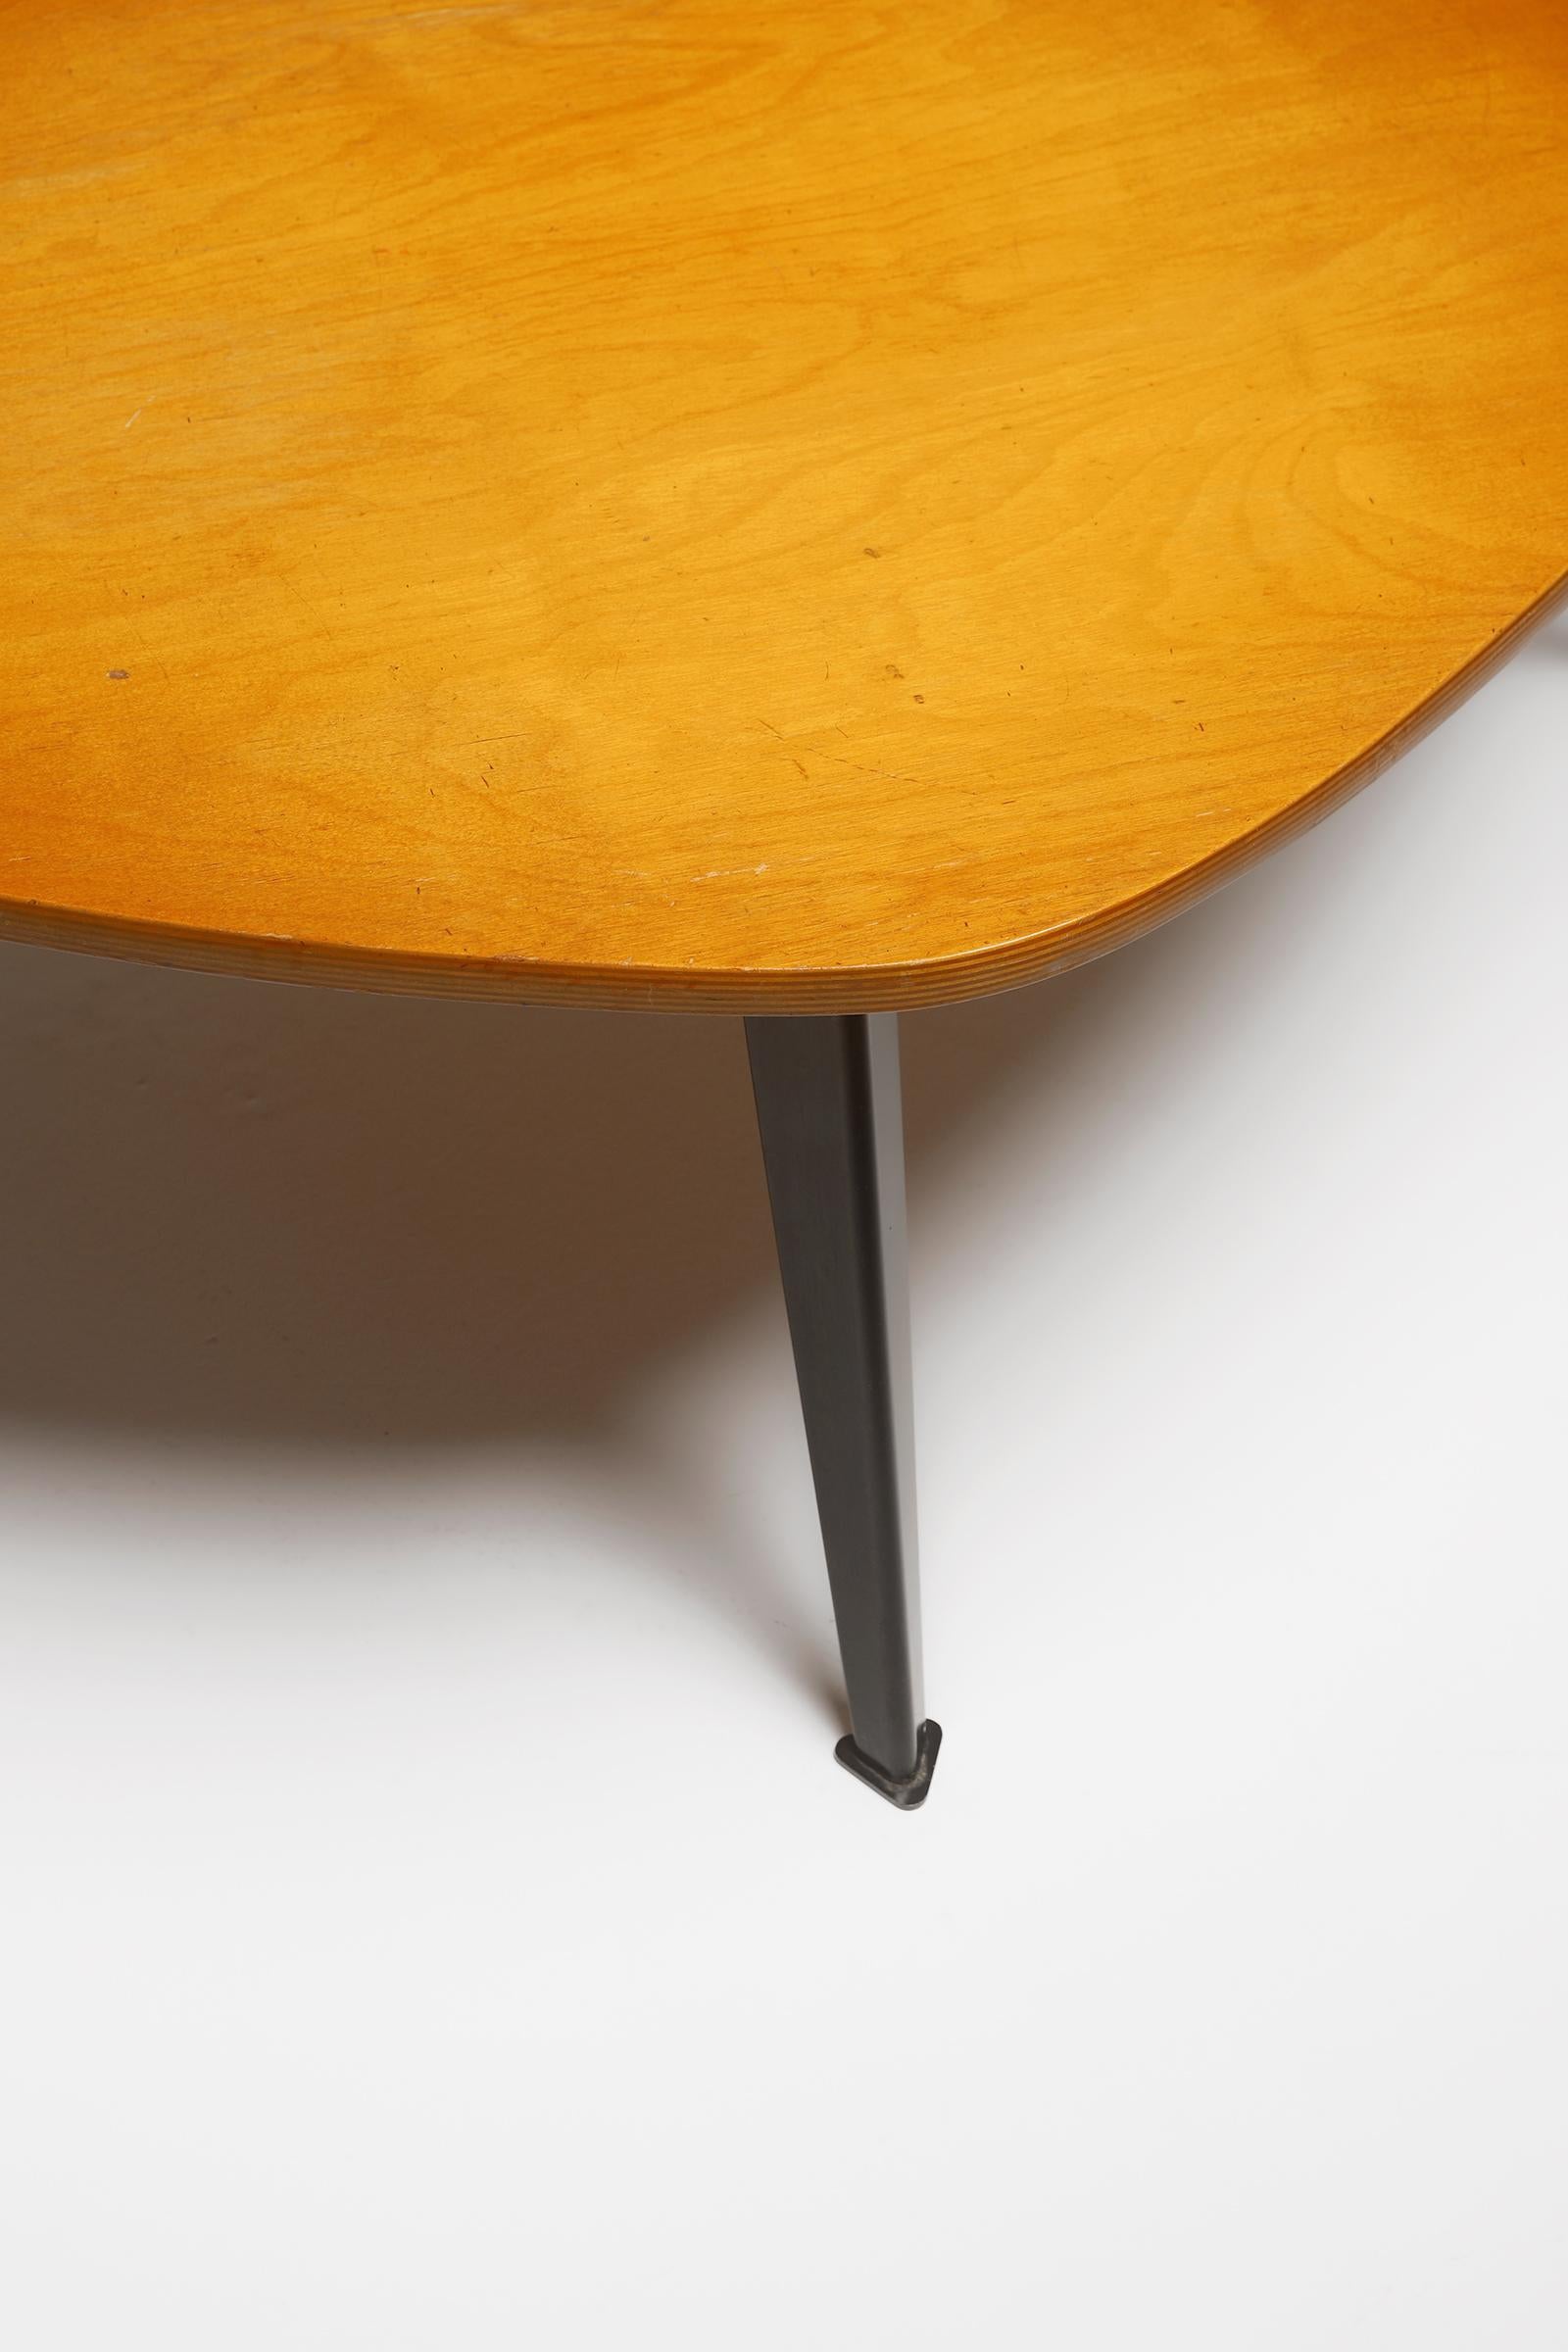 Belgian Mid-century modern wooden Coffee Table by Willy Van Der Meeren 1950s